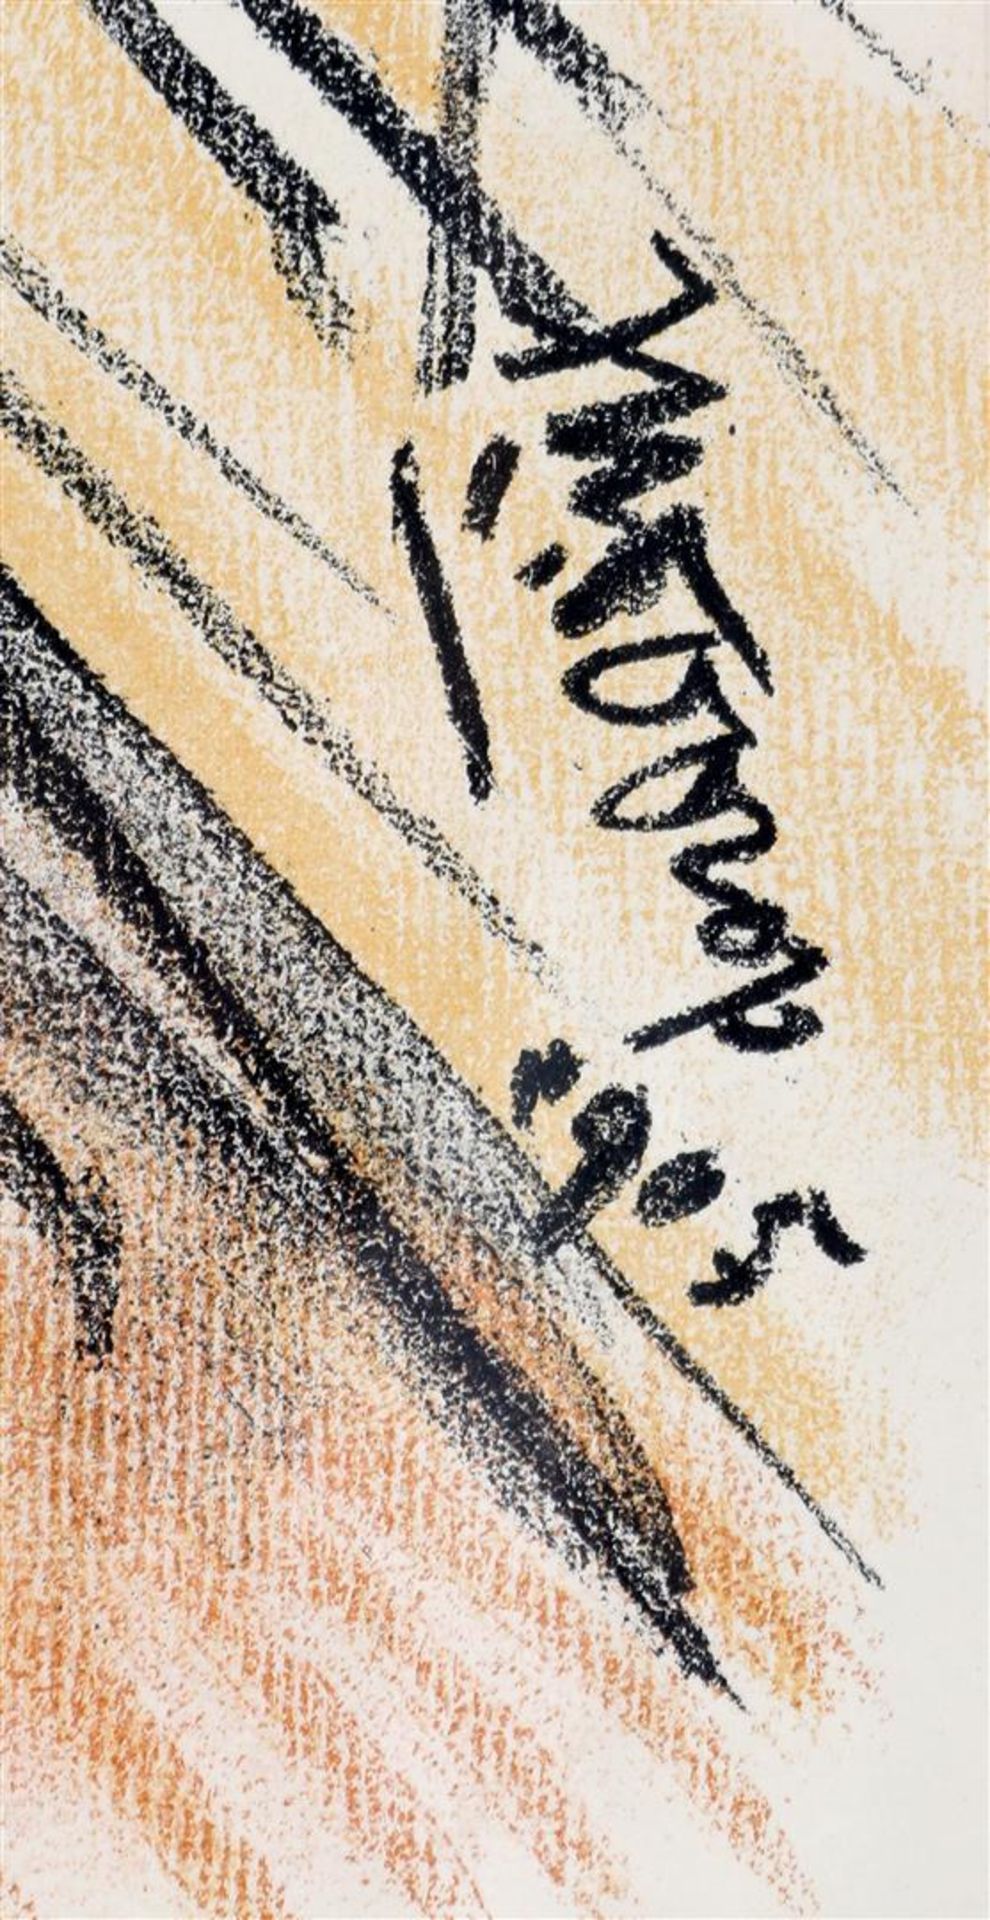 Jan Toorop (1858-1928) - Image 5 of 6